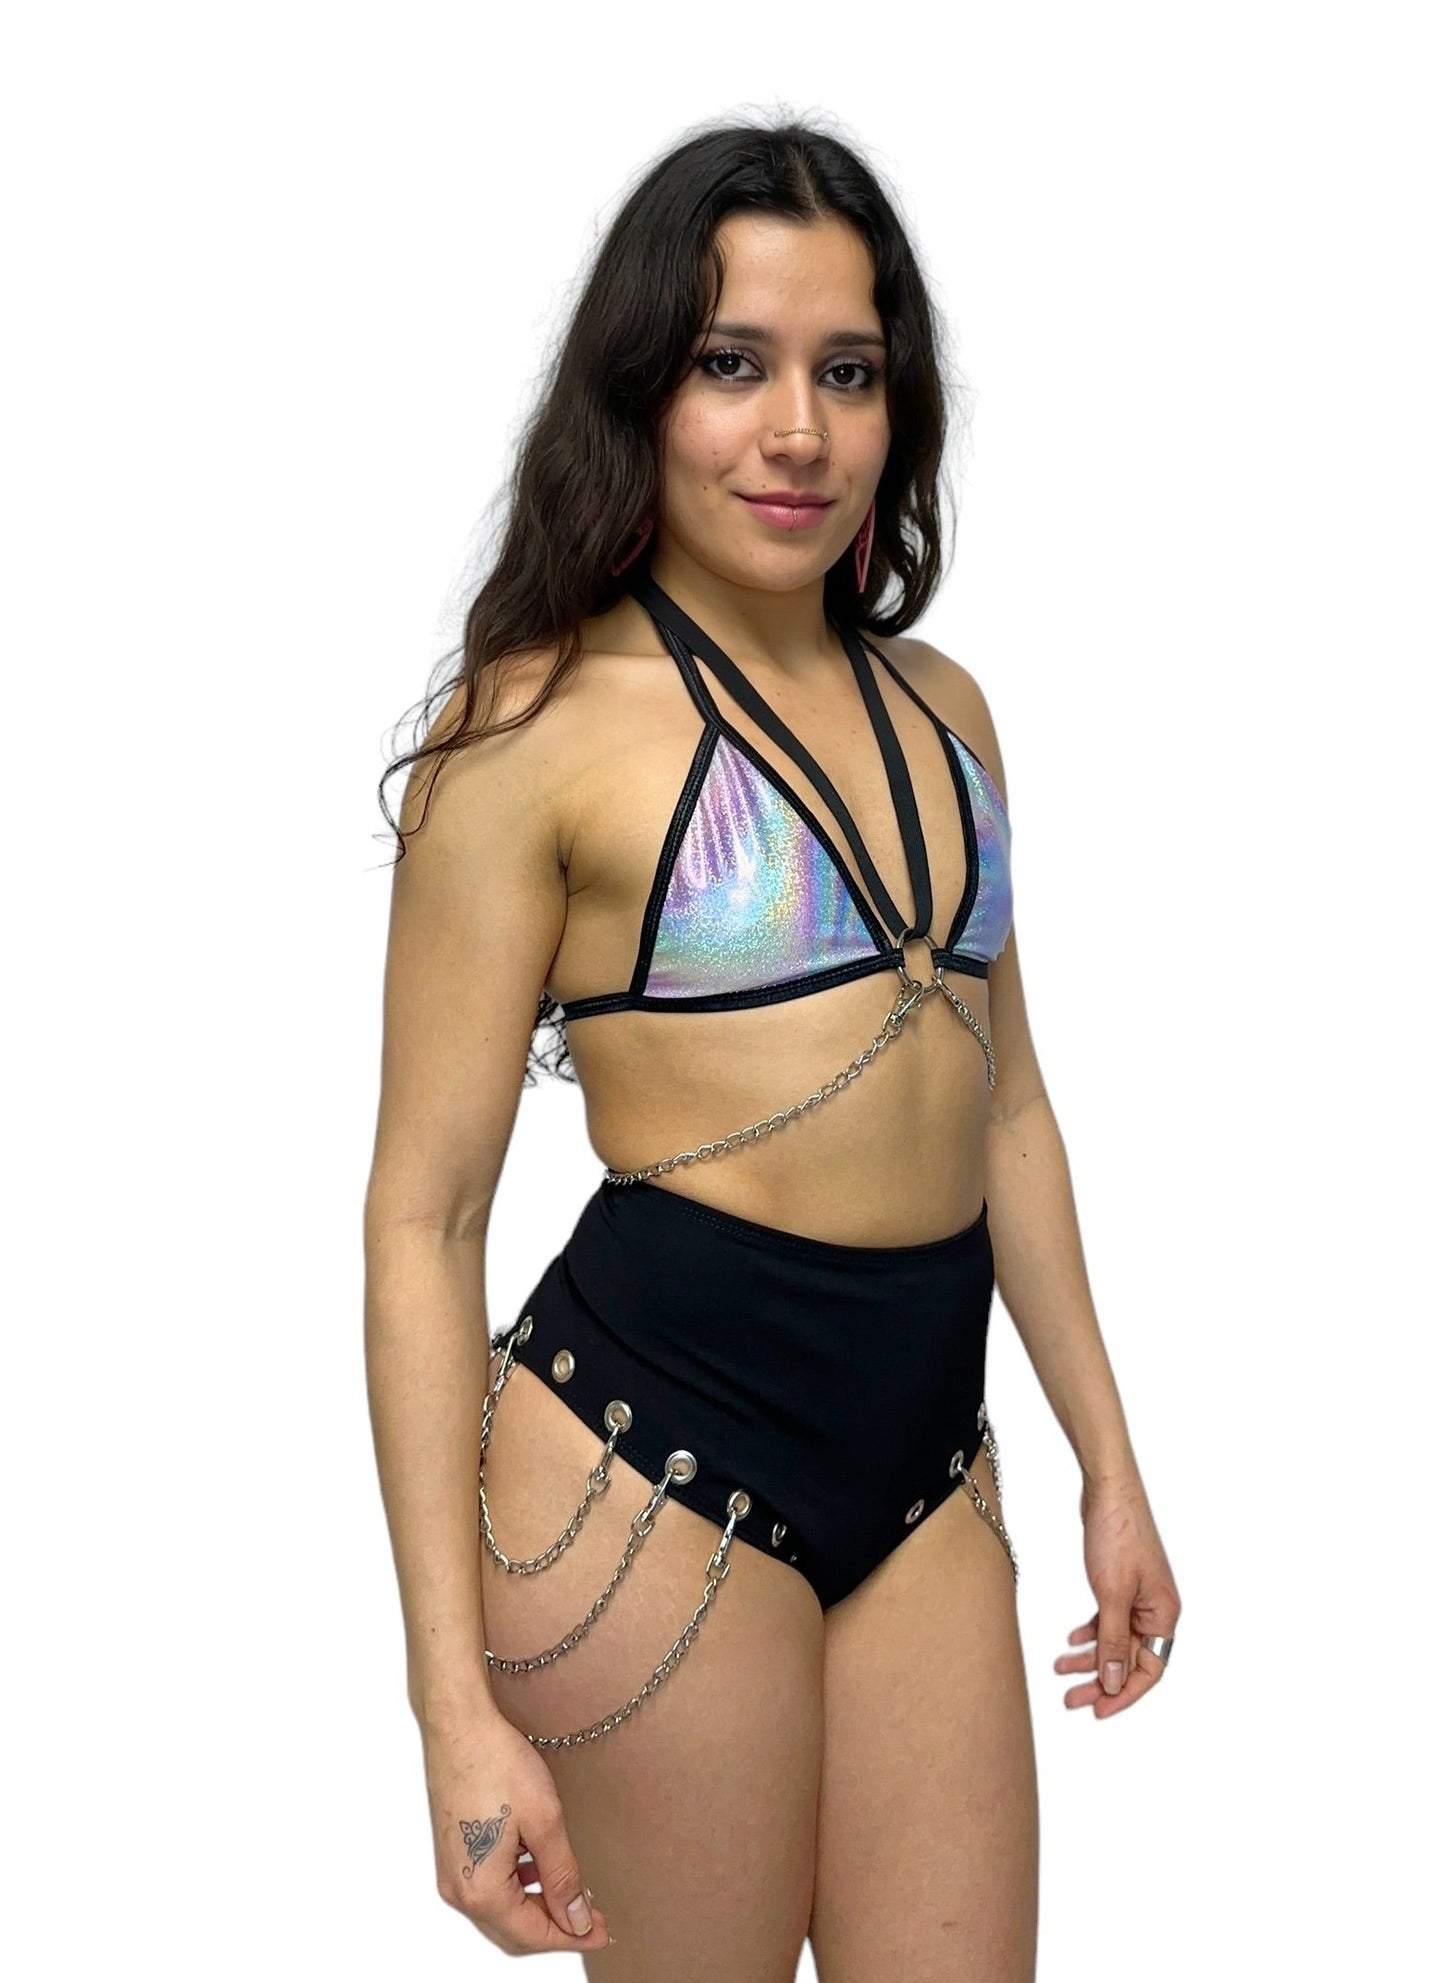 meisje met holografische bikini top met kettingen, techno outfit